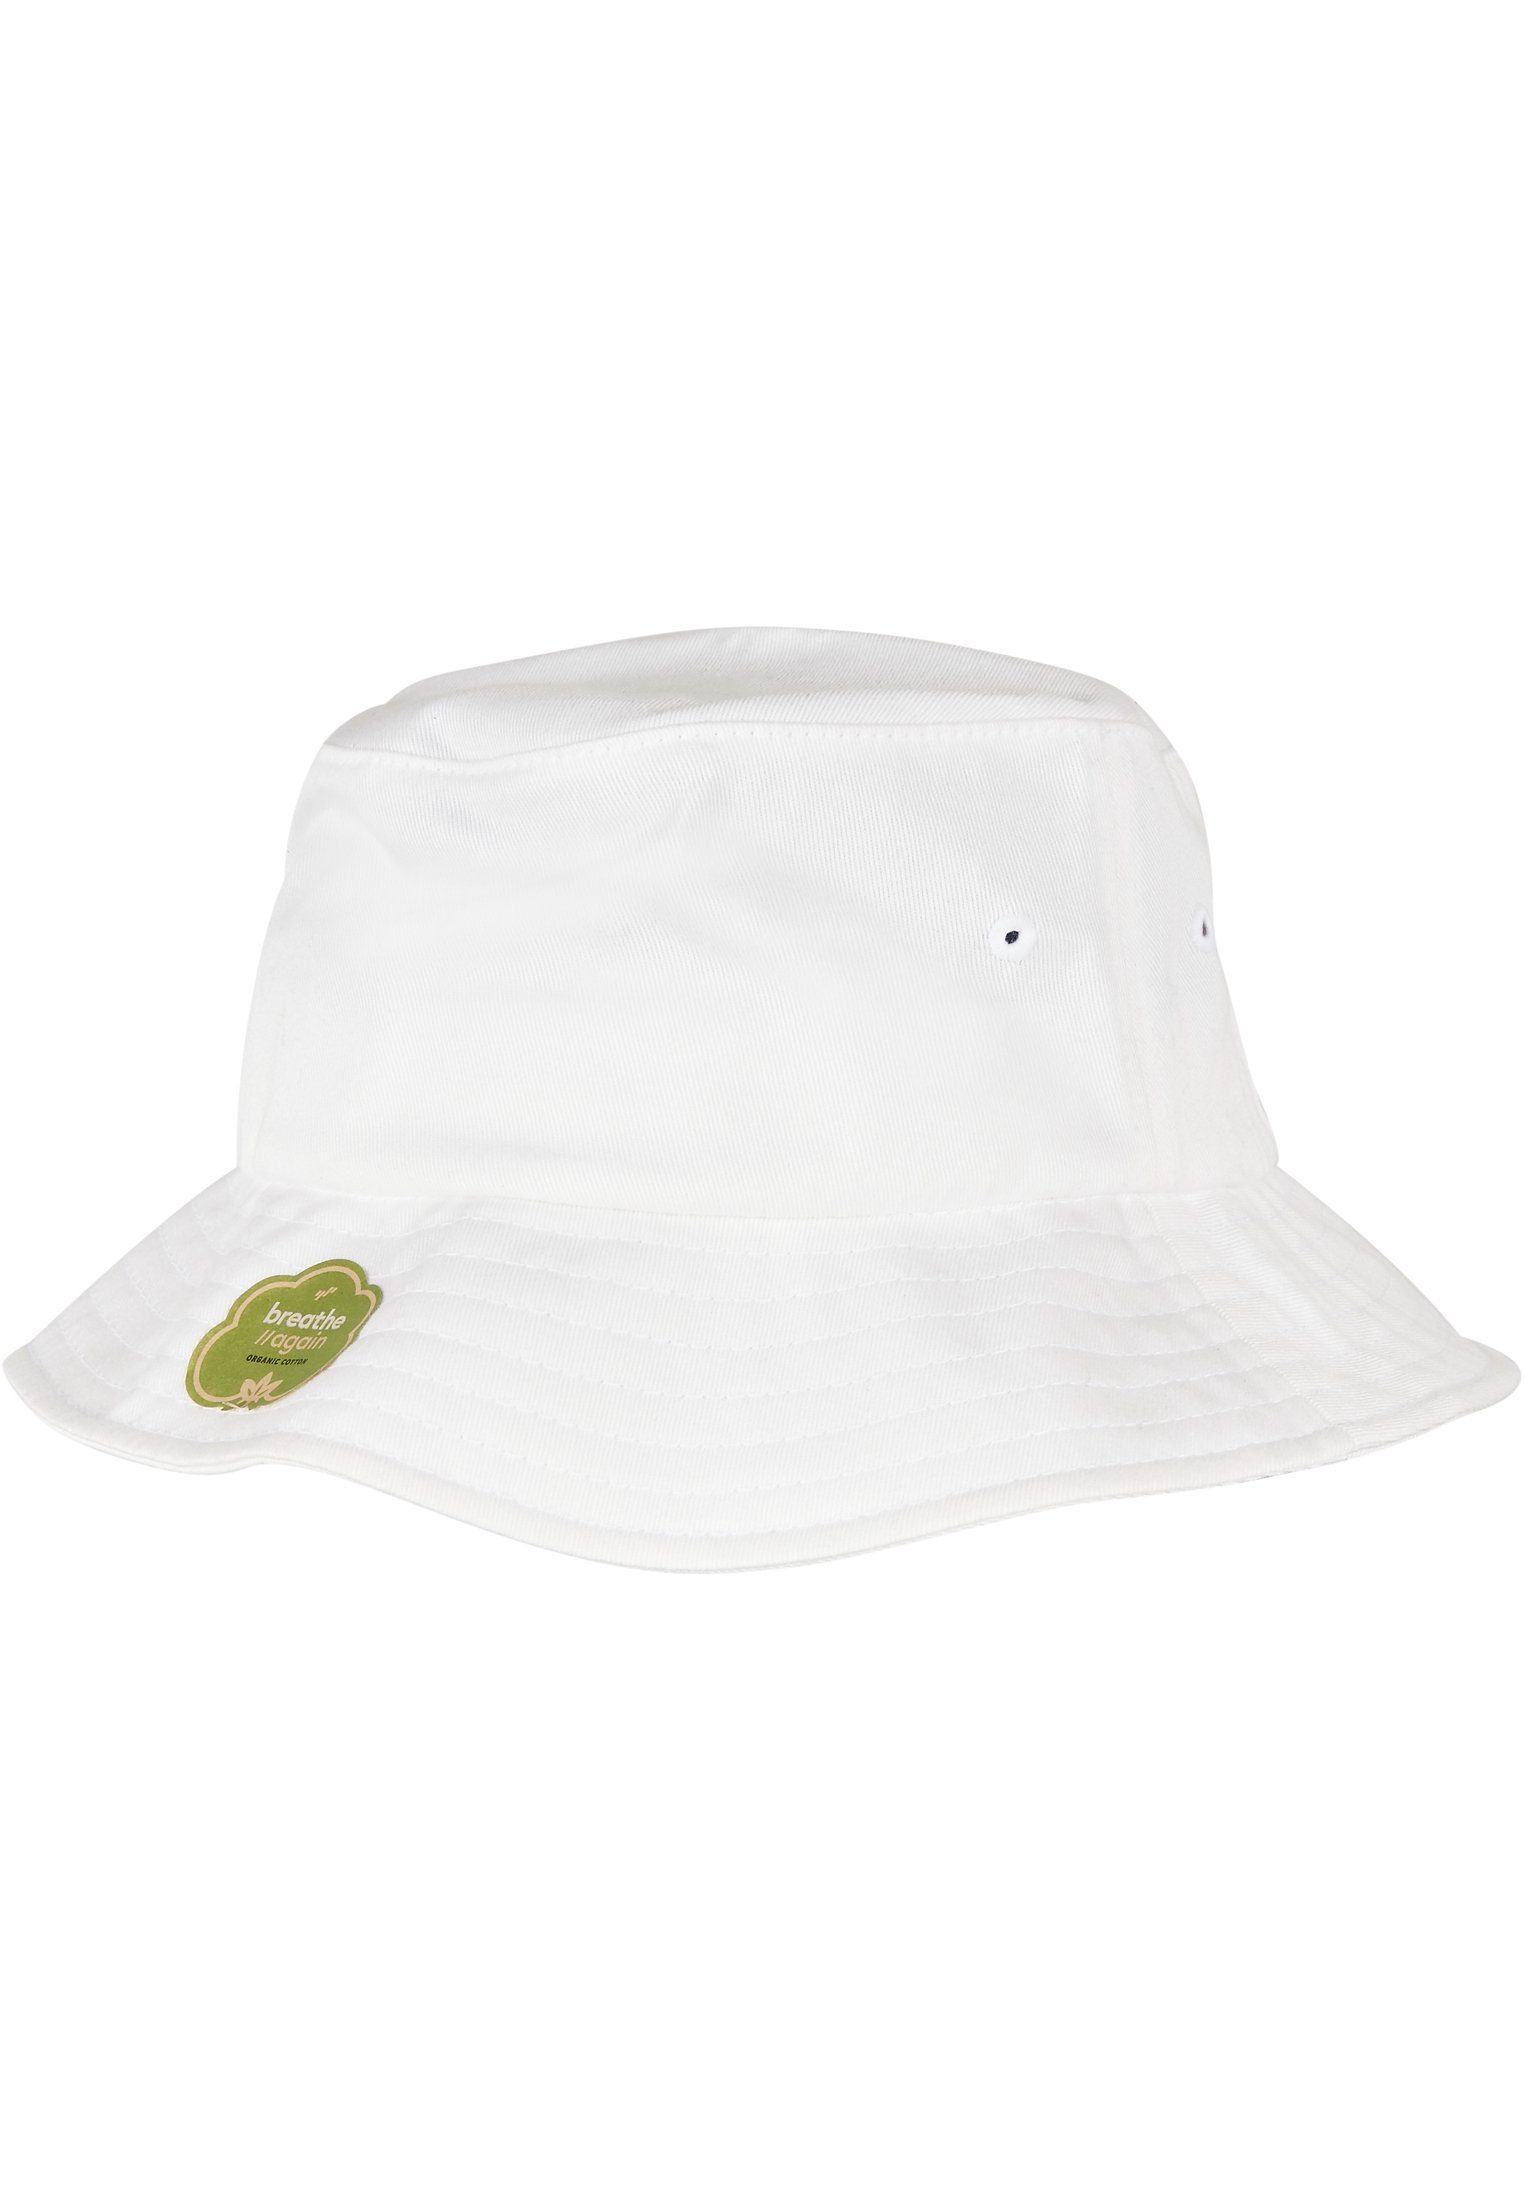 Hat Accessoires Bucket white Flex Flexfit Cap Cotton Organic